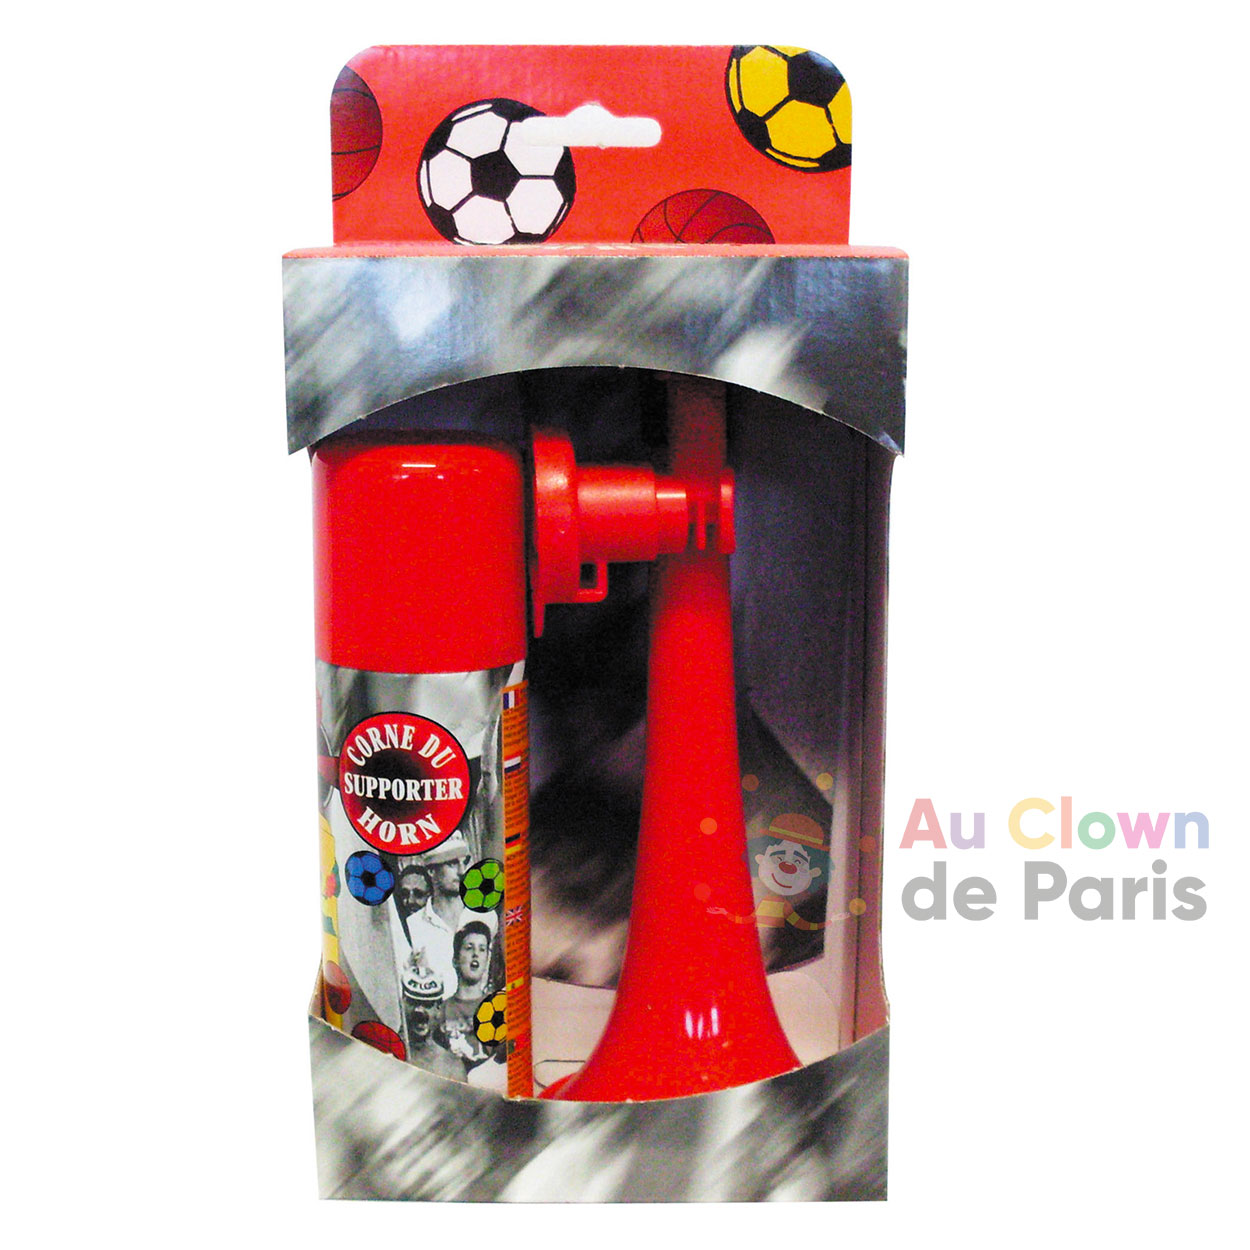 Corne de supporter à gaz foot - Au Clown de Paris accessoires supporters